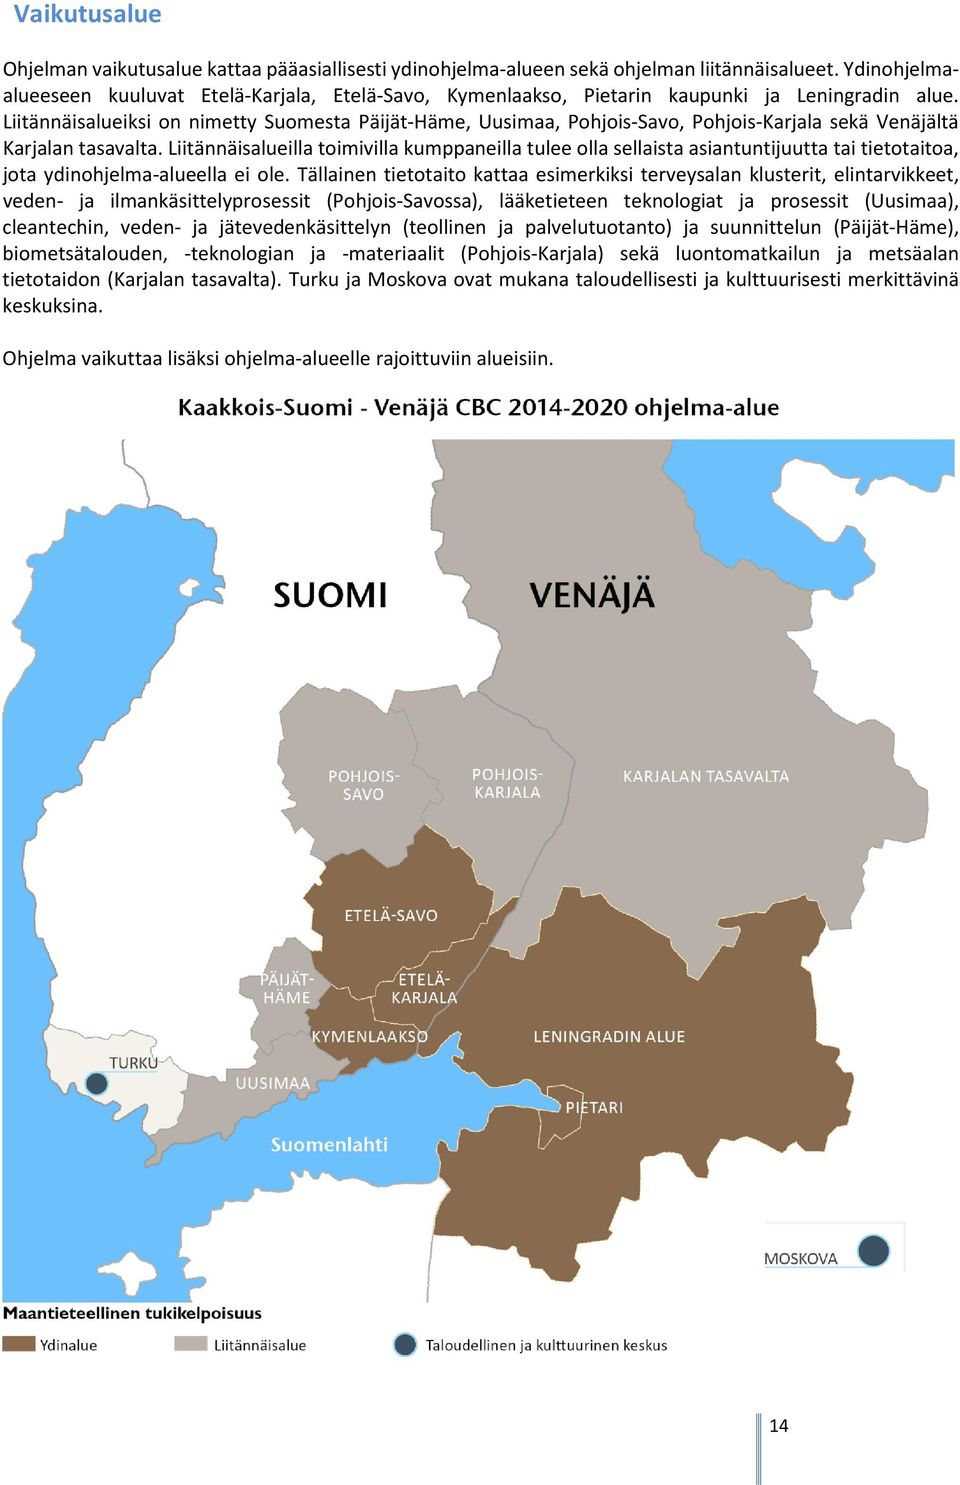 Liitännäisalueiksi on nimetty Suomesta Päijät-Häme, Uusimaa, Pohjois-Savo, Pohjois-Karjala sekä Venäjältä Karjalan tasavalta.